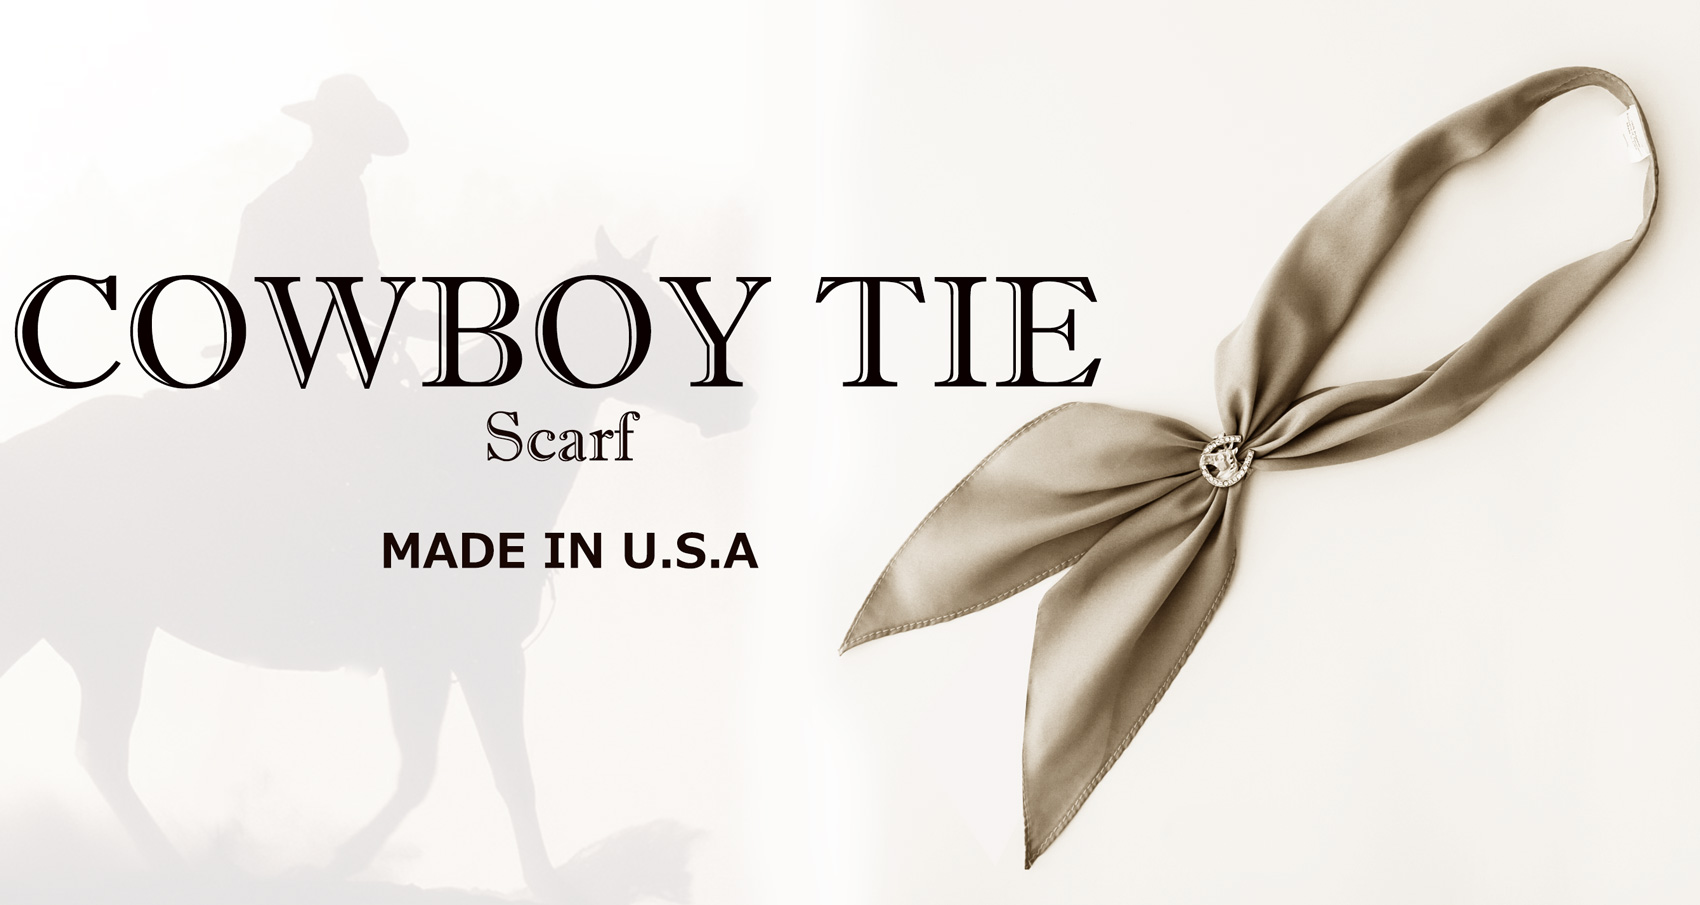 アメリカンカウボーイタイ ウエスタン ネックスカーフ（ブラック）/Cowboy Tie/Western Neck Scarf(Black) スカーフ ・ワイルドラグ・スカーフスライド